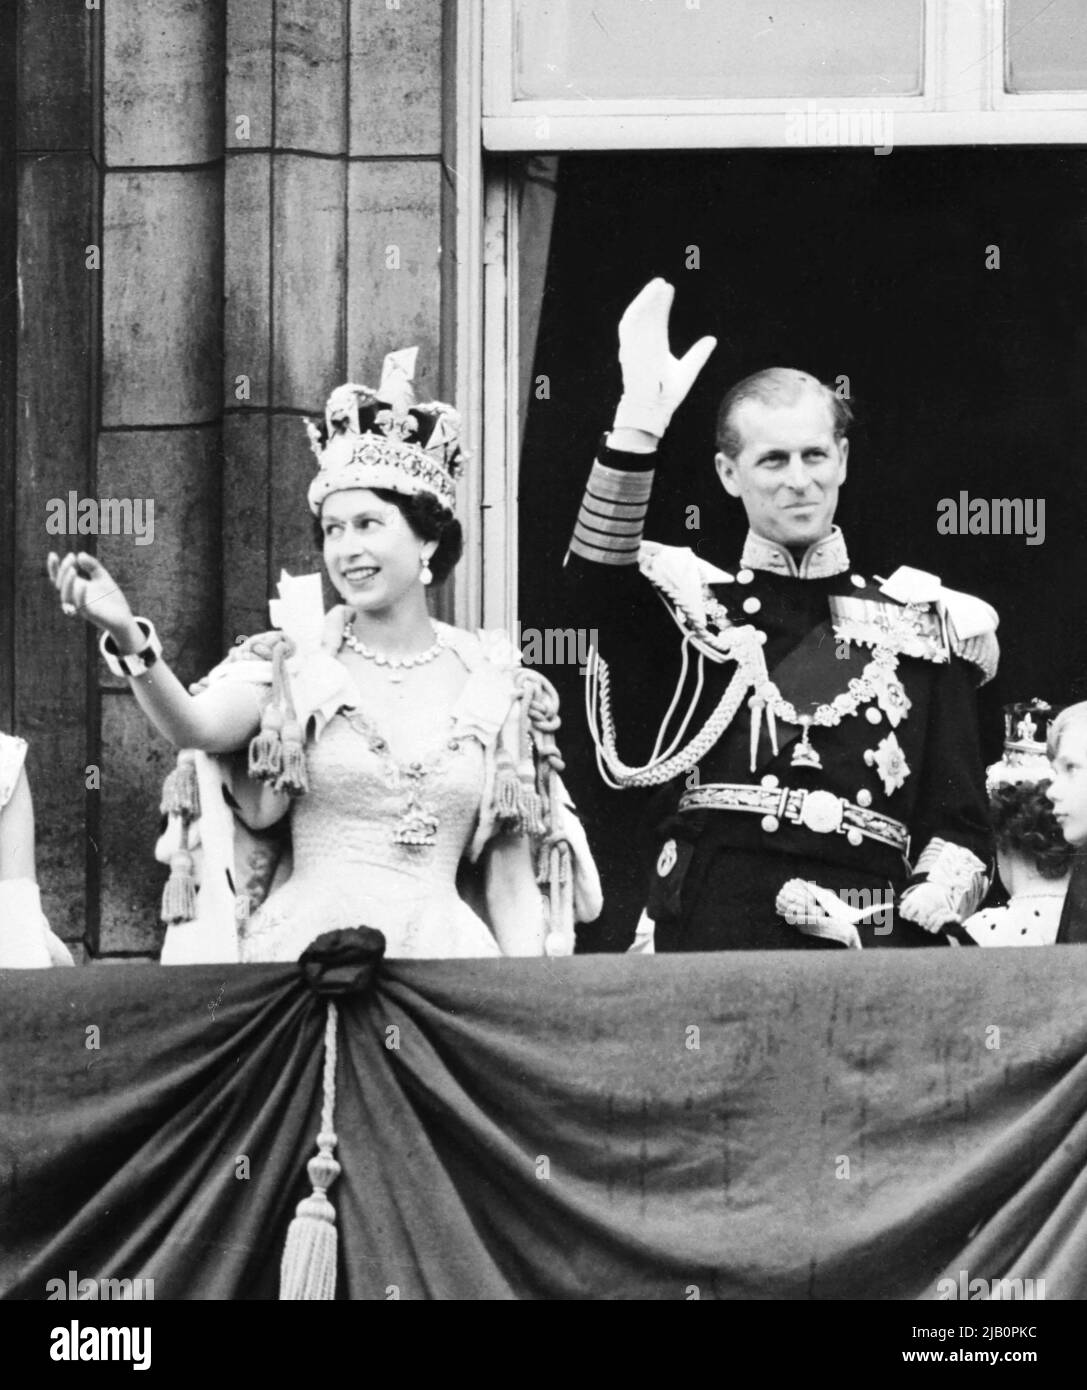 La Regina Elisabetta II (L) della Gran Bretagna, accompagnata dal Principe Filippo, Duca di Edimburgo (R), ondeggia alla folla, 2 giugno 1953 dopo essere stata incoronata a Westminter Abbey a Londra. – Elisabetta sposò il Duca di Edimburgo il 20th novembre 1947 e fu proclamata Regina nel 1952 all'età di 25 anni. La sua incoronazione fu il primo evento televisivo mondiale Foto Stock